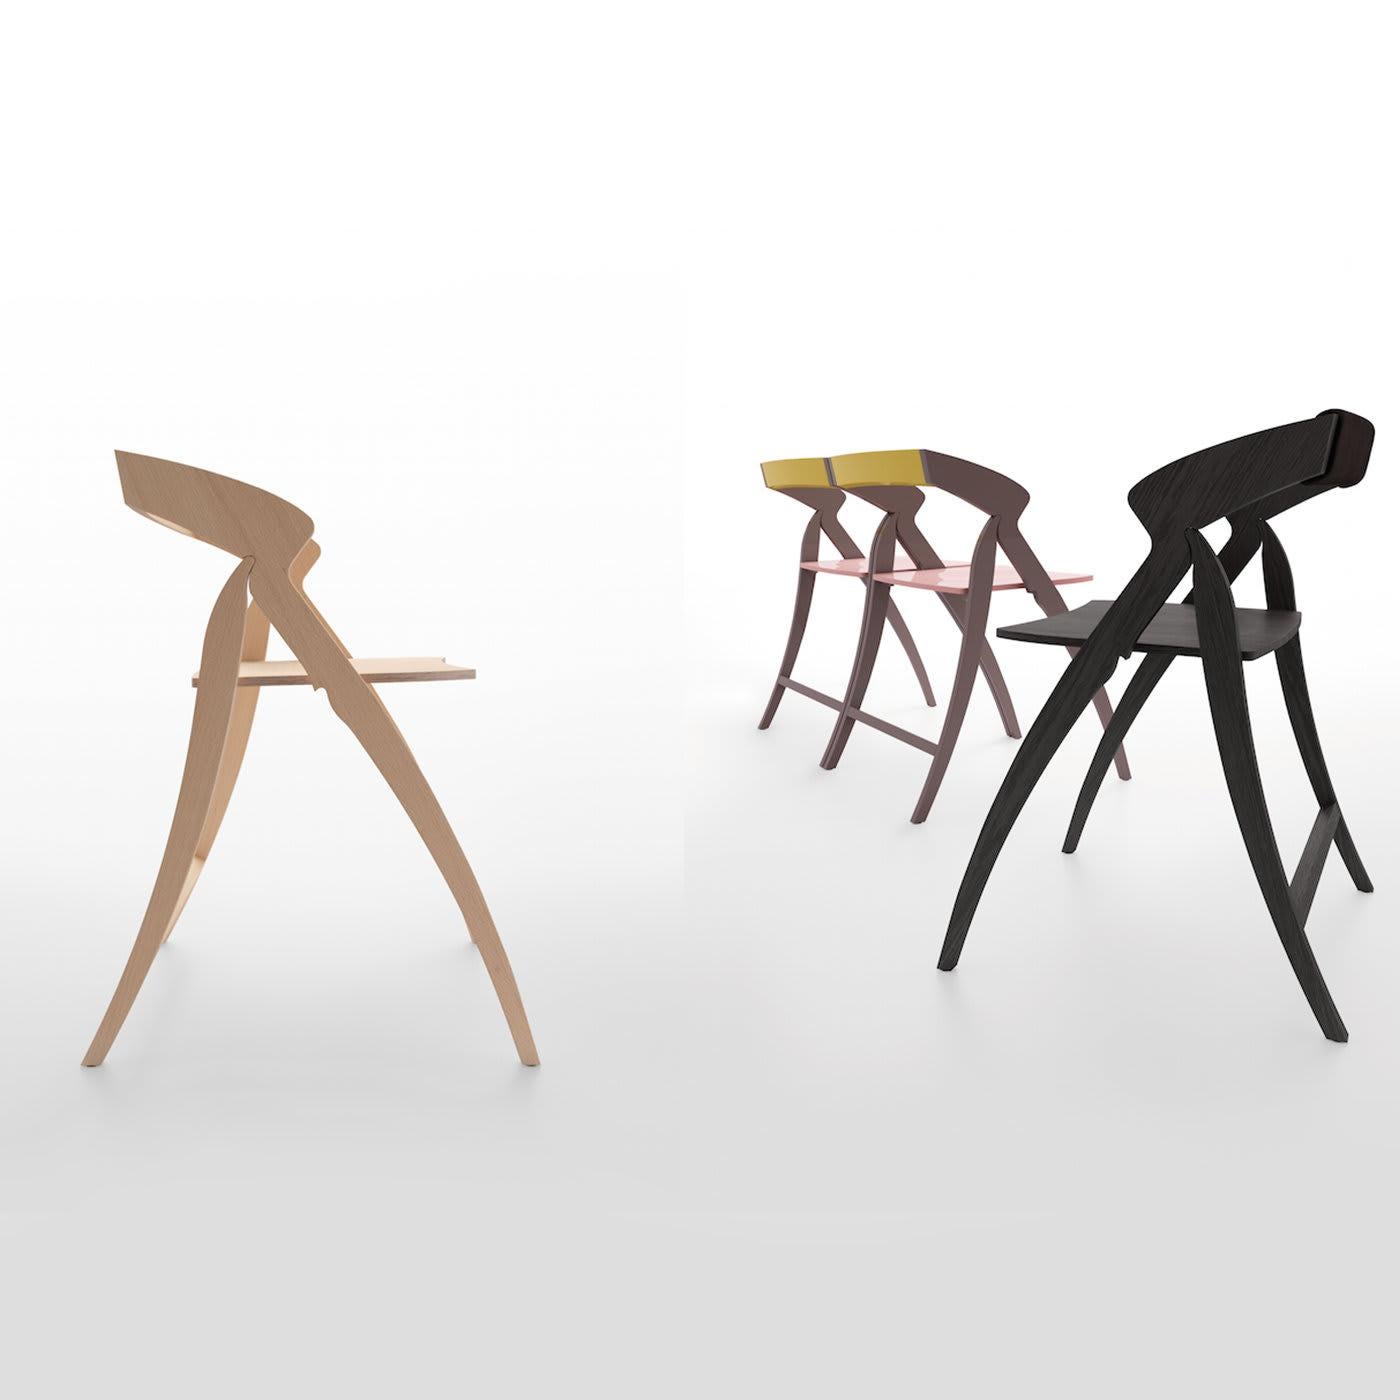 Dieser atemberaubende Stuhl wurde von dem Architekten Enrico Davide Bona entworfen und auf der Mailänder Designwoche 2001 vorgestellt. Als Teil des Wandermuseums I-Dot-Italian, Design on Tour, reiste diese Arbeit zur ICFF in NYC und zur NeoCon in